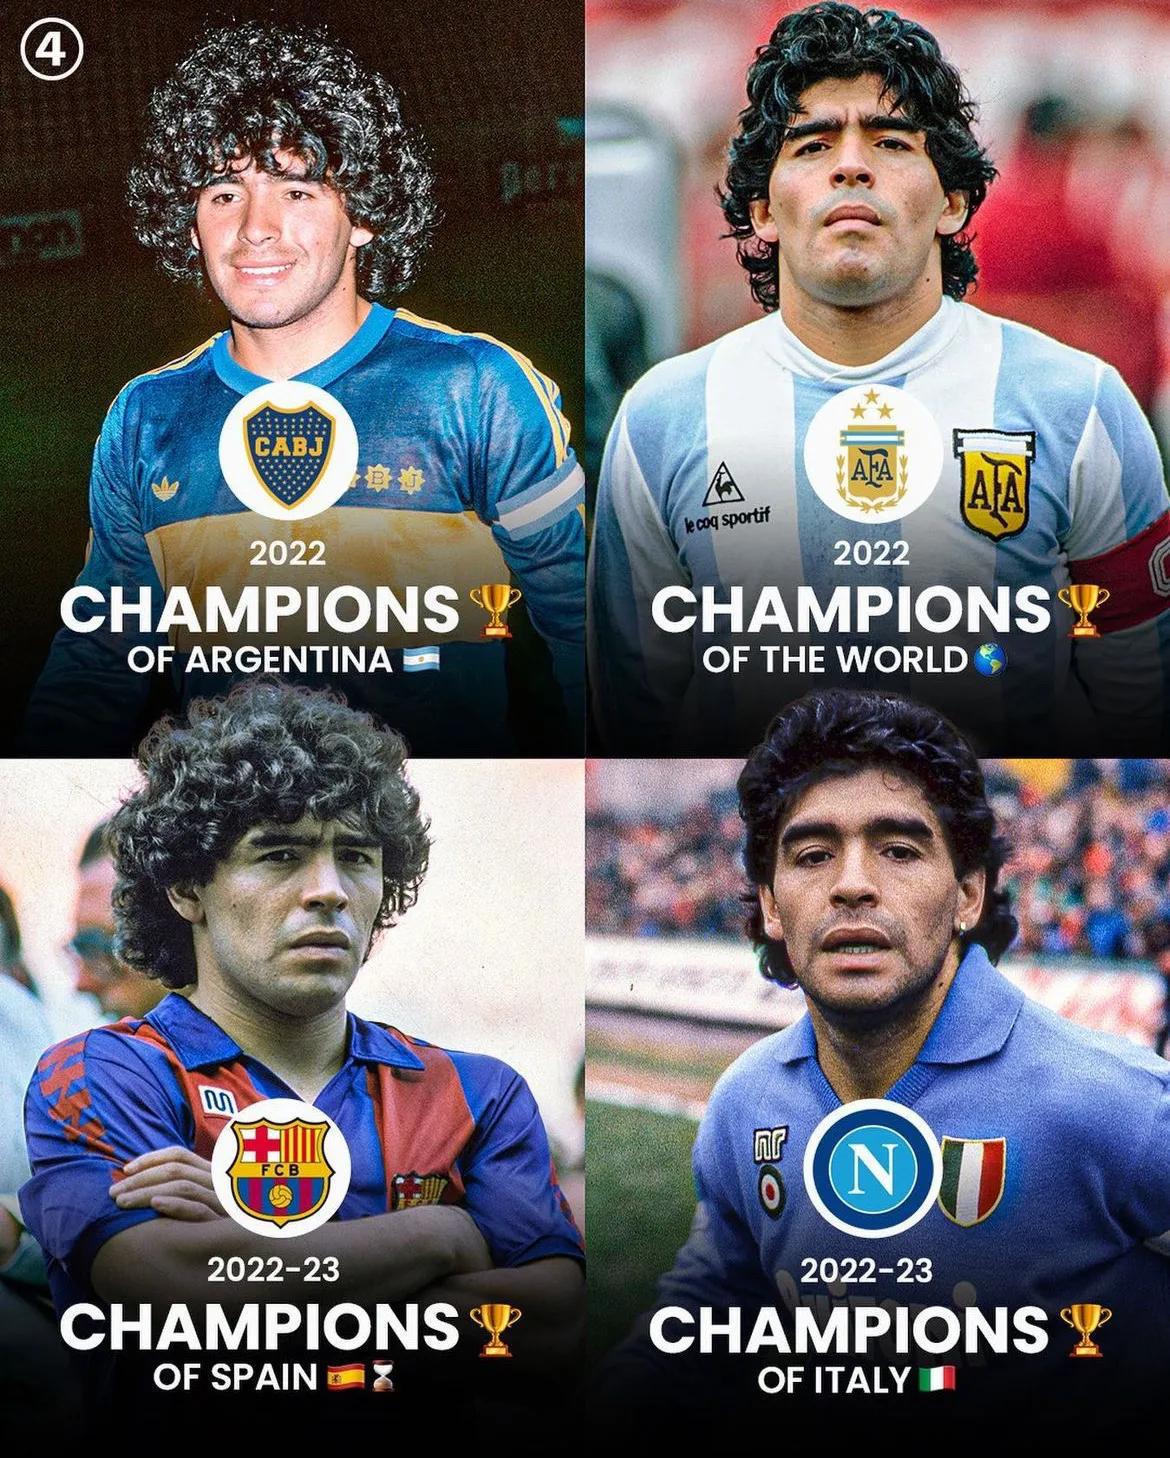 博卡青年 - 2022阿根廷超冠军
阿根廷 - 世界杯冠军
那不勒斯 - 202(1)